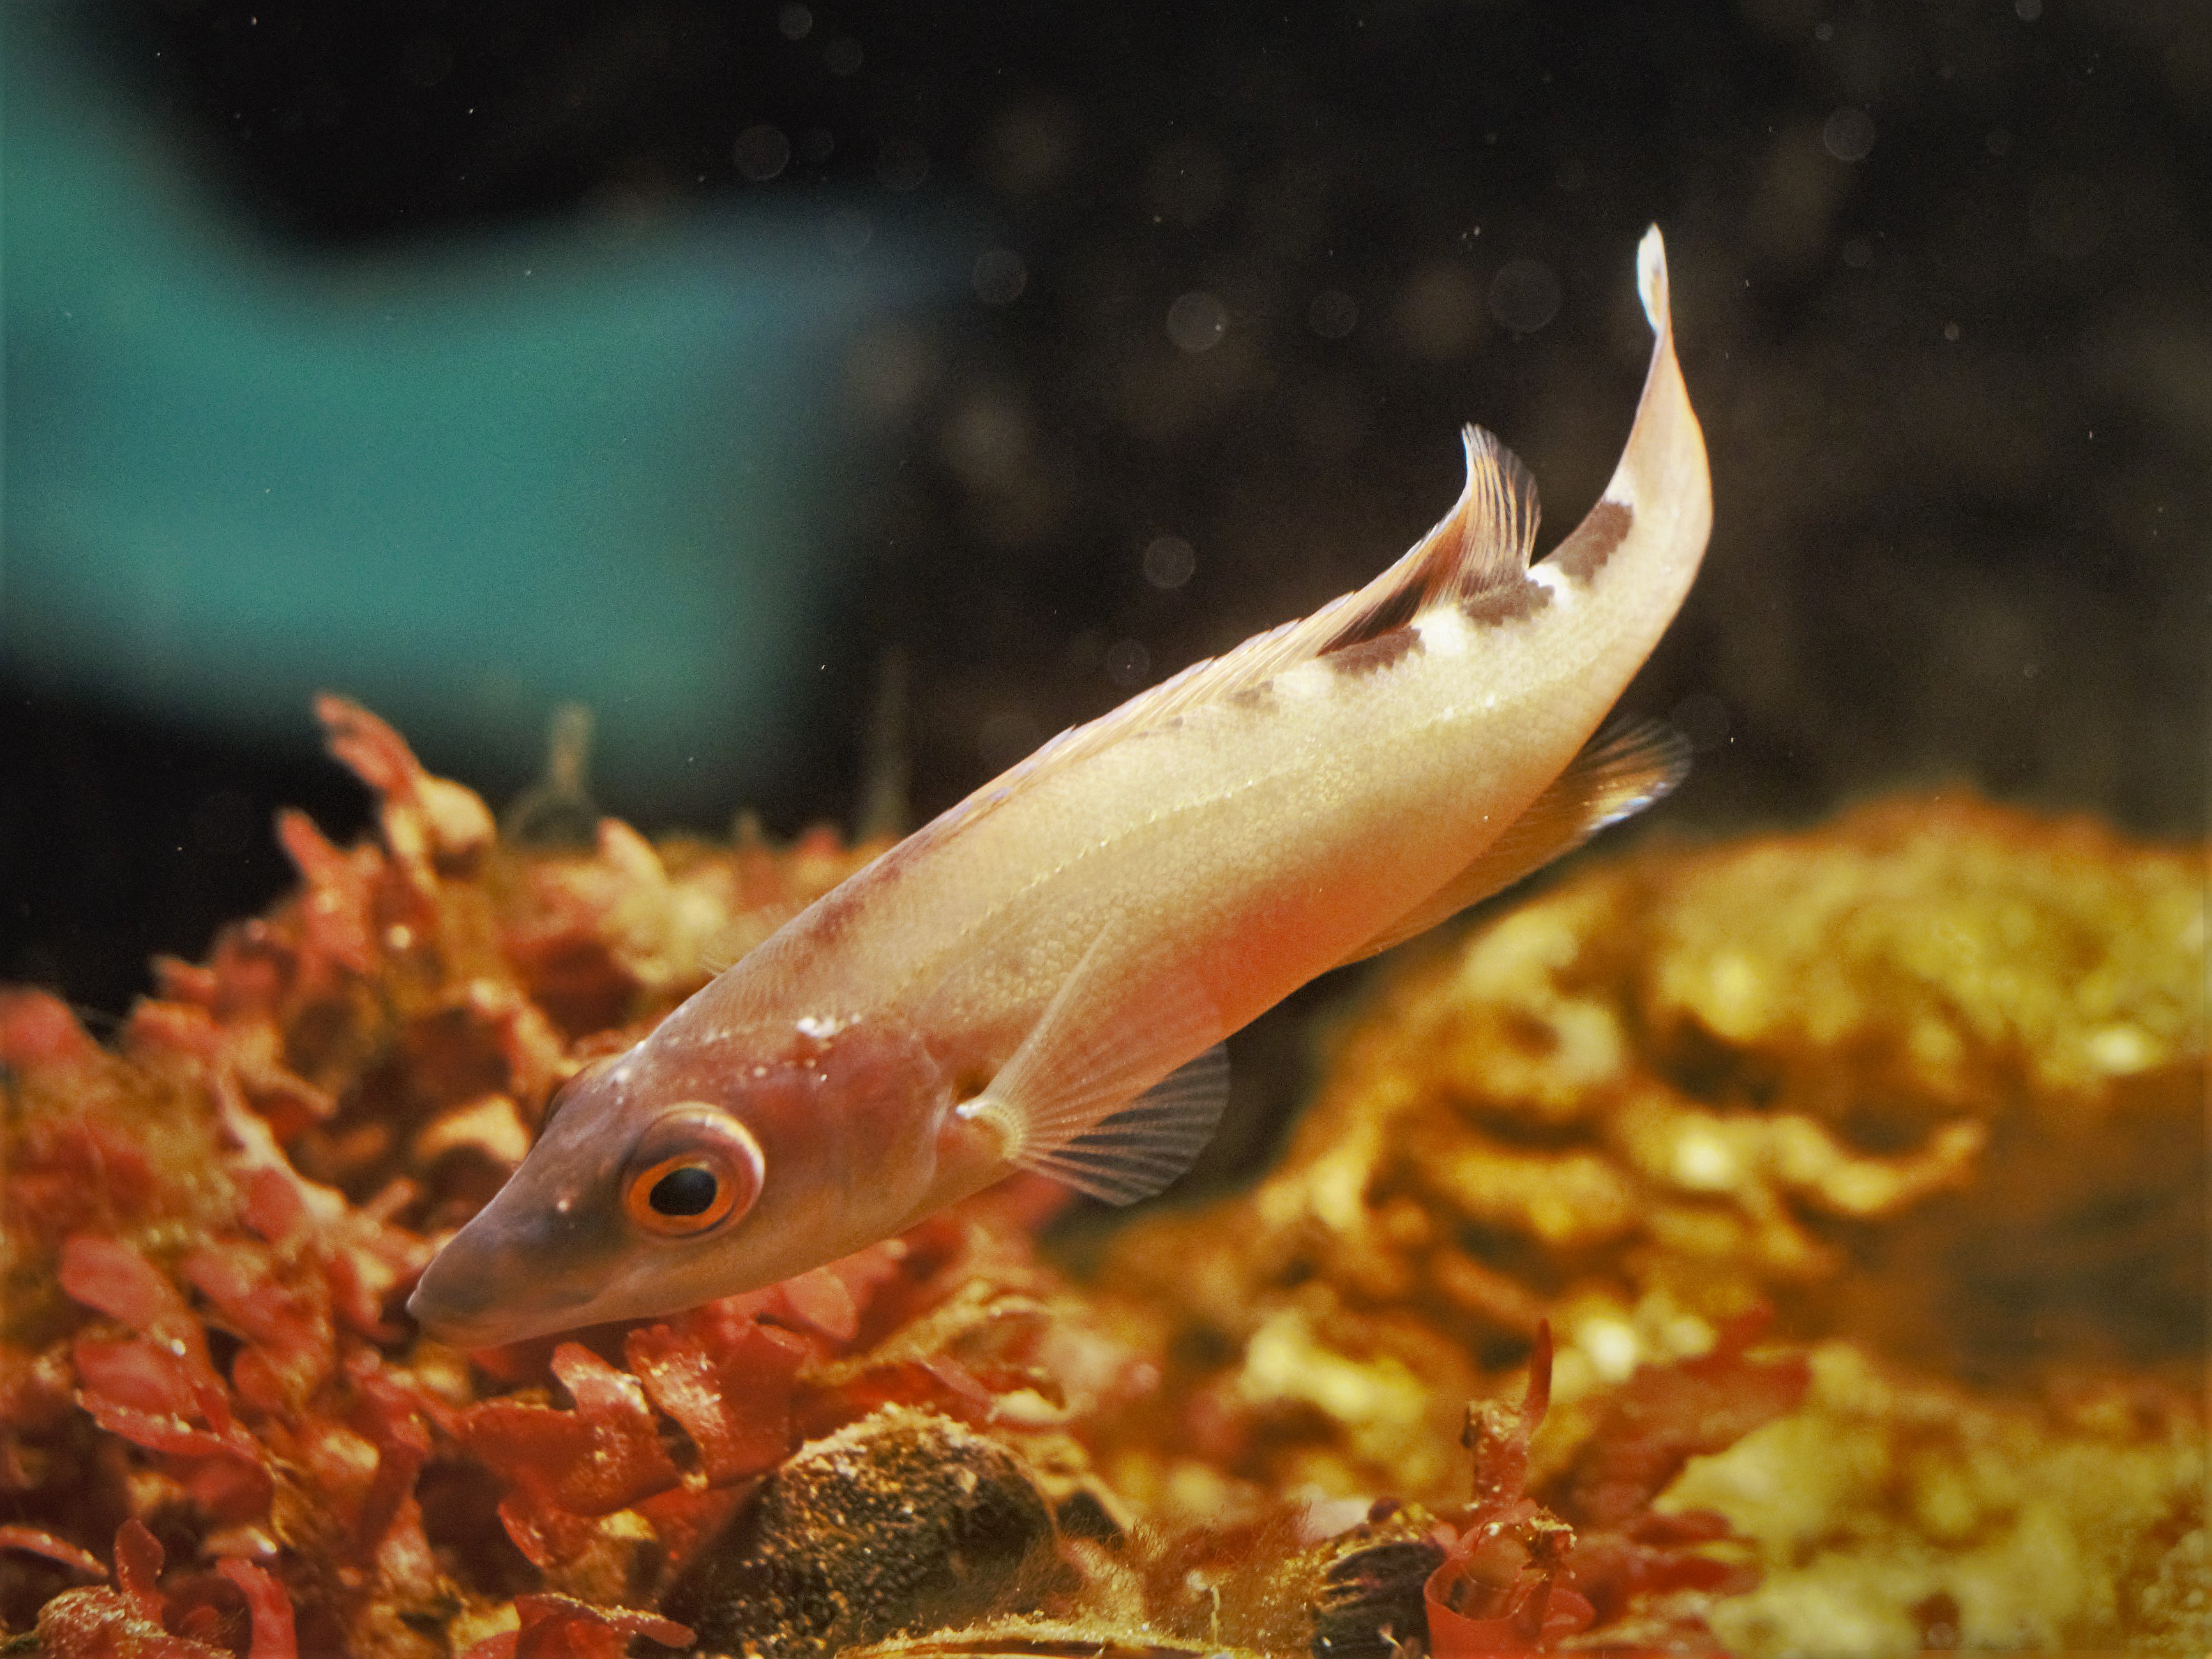 Sjælden fisk fanget i Øresund: Nu har akvarium opfordring | TV Lorry